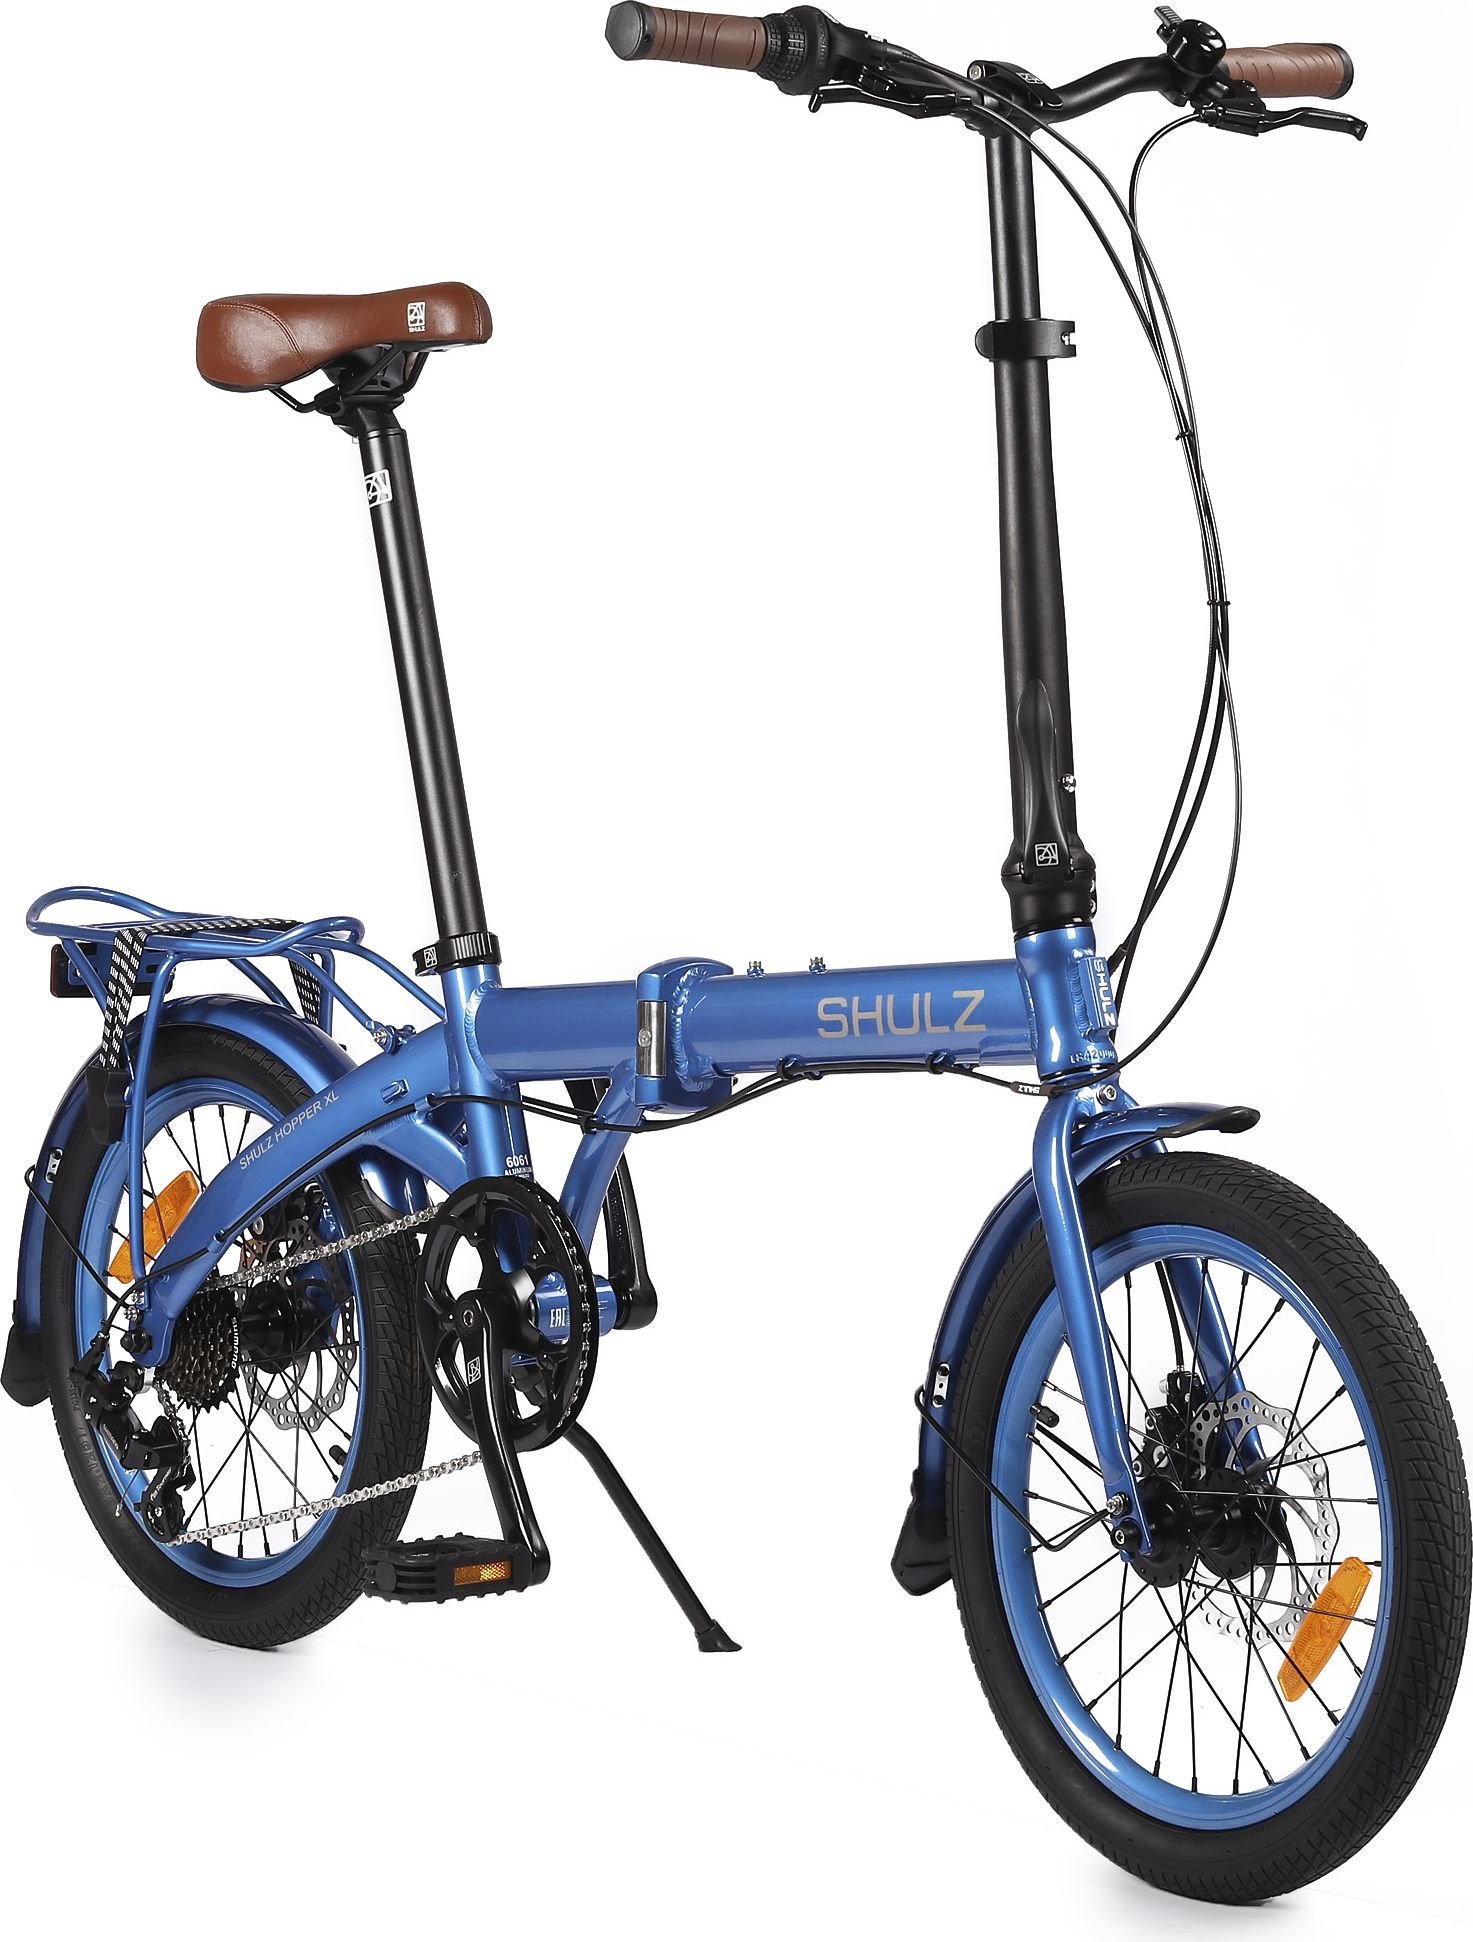 Складной велосипед шульц купить. Велосипед Shulz Hopper XL. Велосипед Shulz Seaford. Велосипед Shulz Seaford 20. Shulz Lucky Clover.